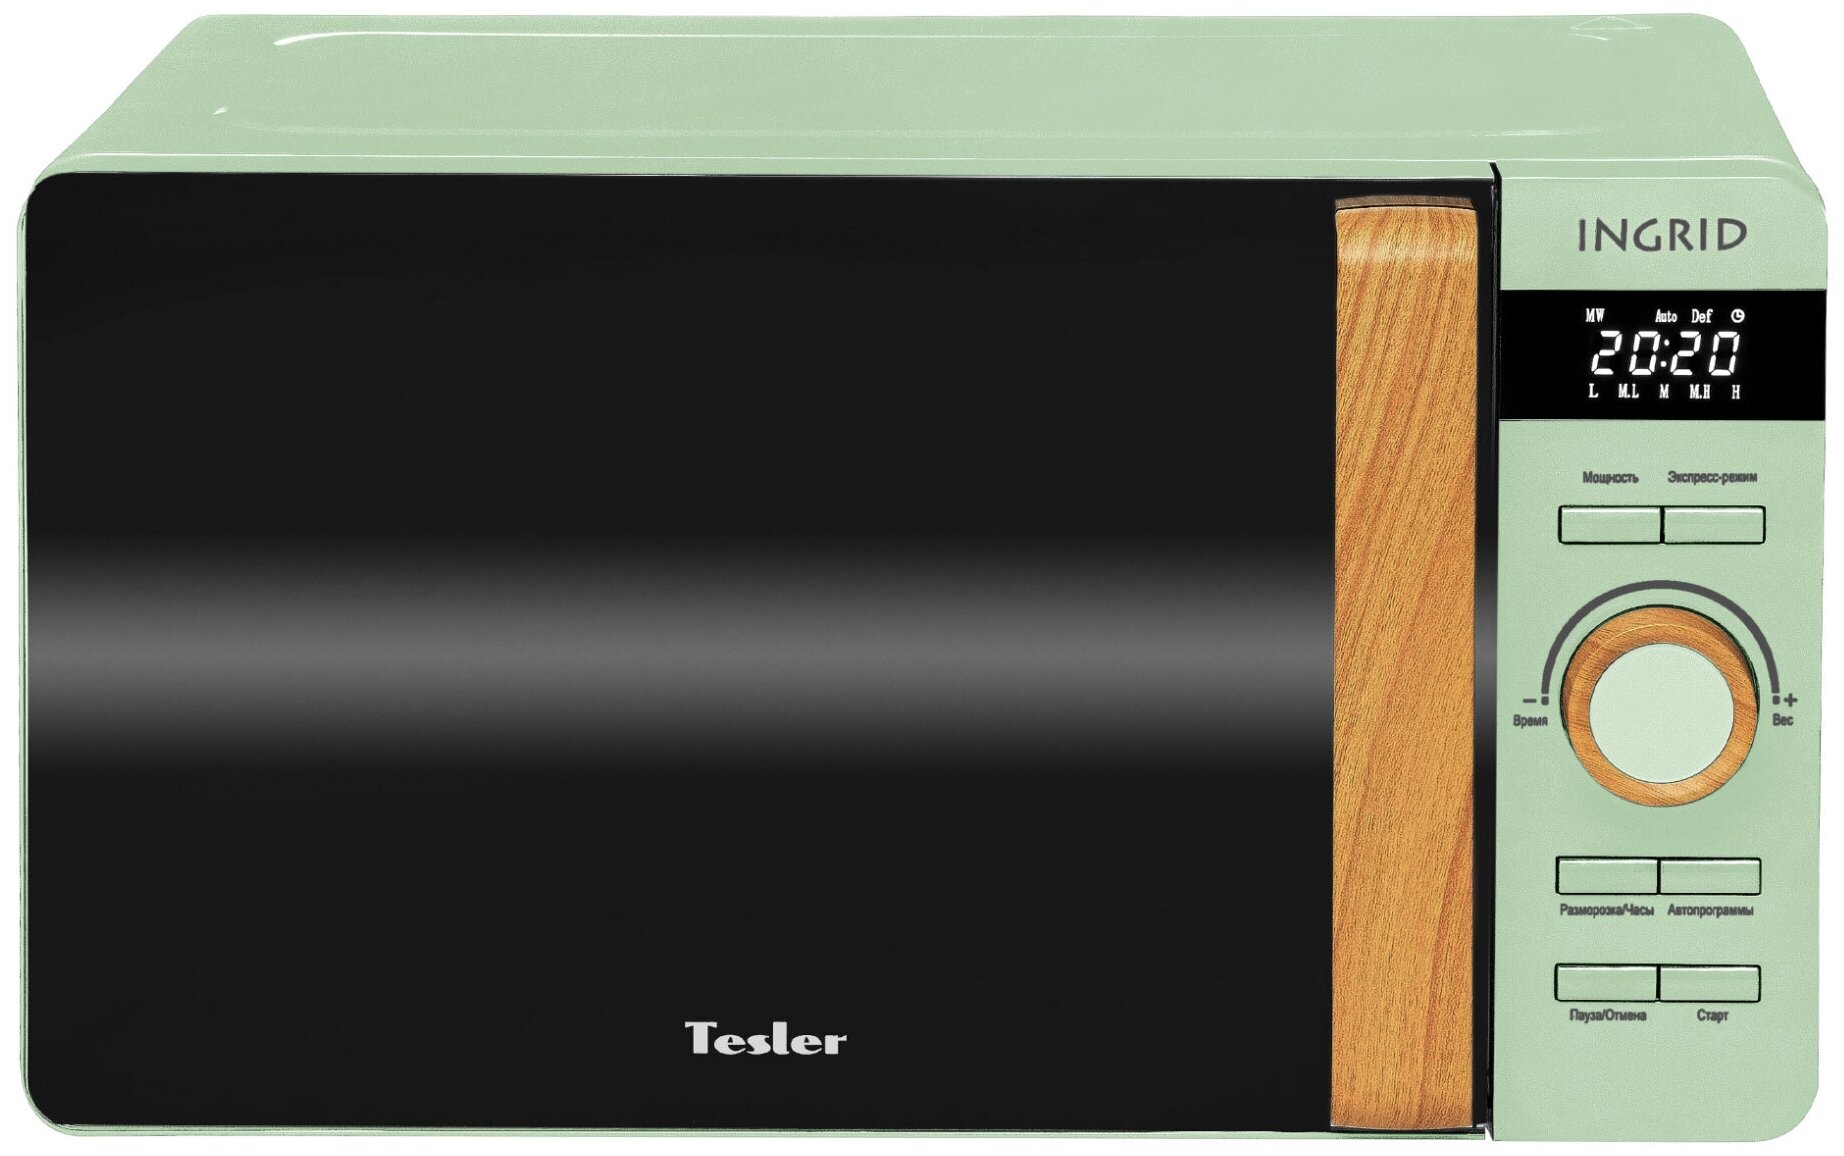 Микроволновая печь Tesler ME-2044, зеленый — купить в интернет-магазине по низкой цене на Яндекс Маркете